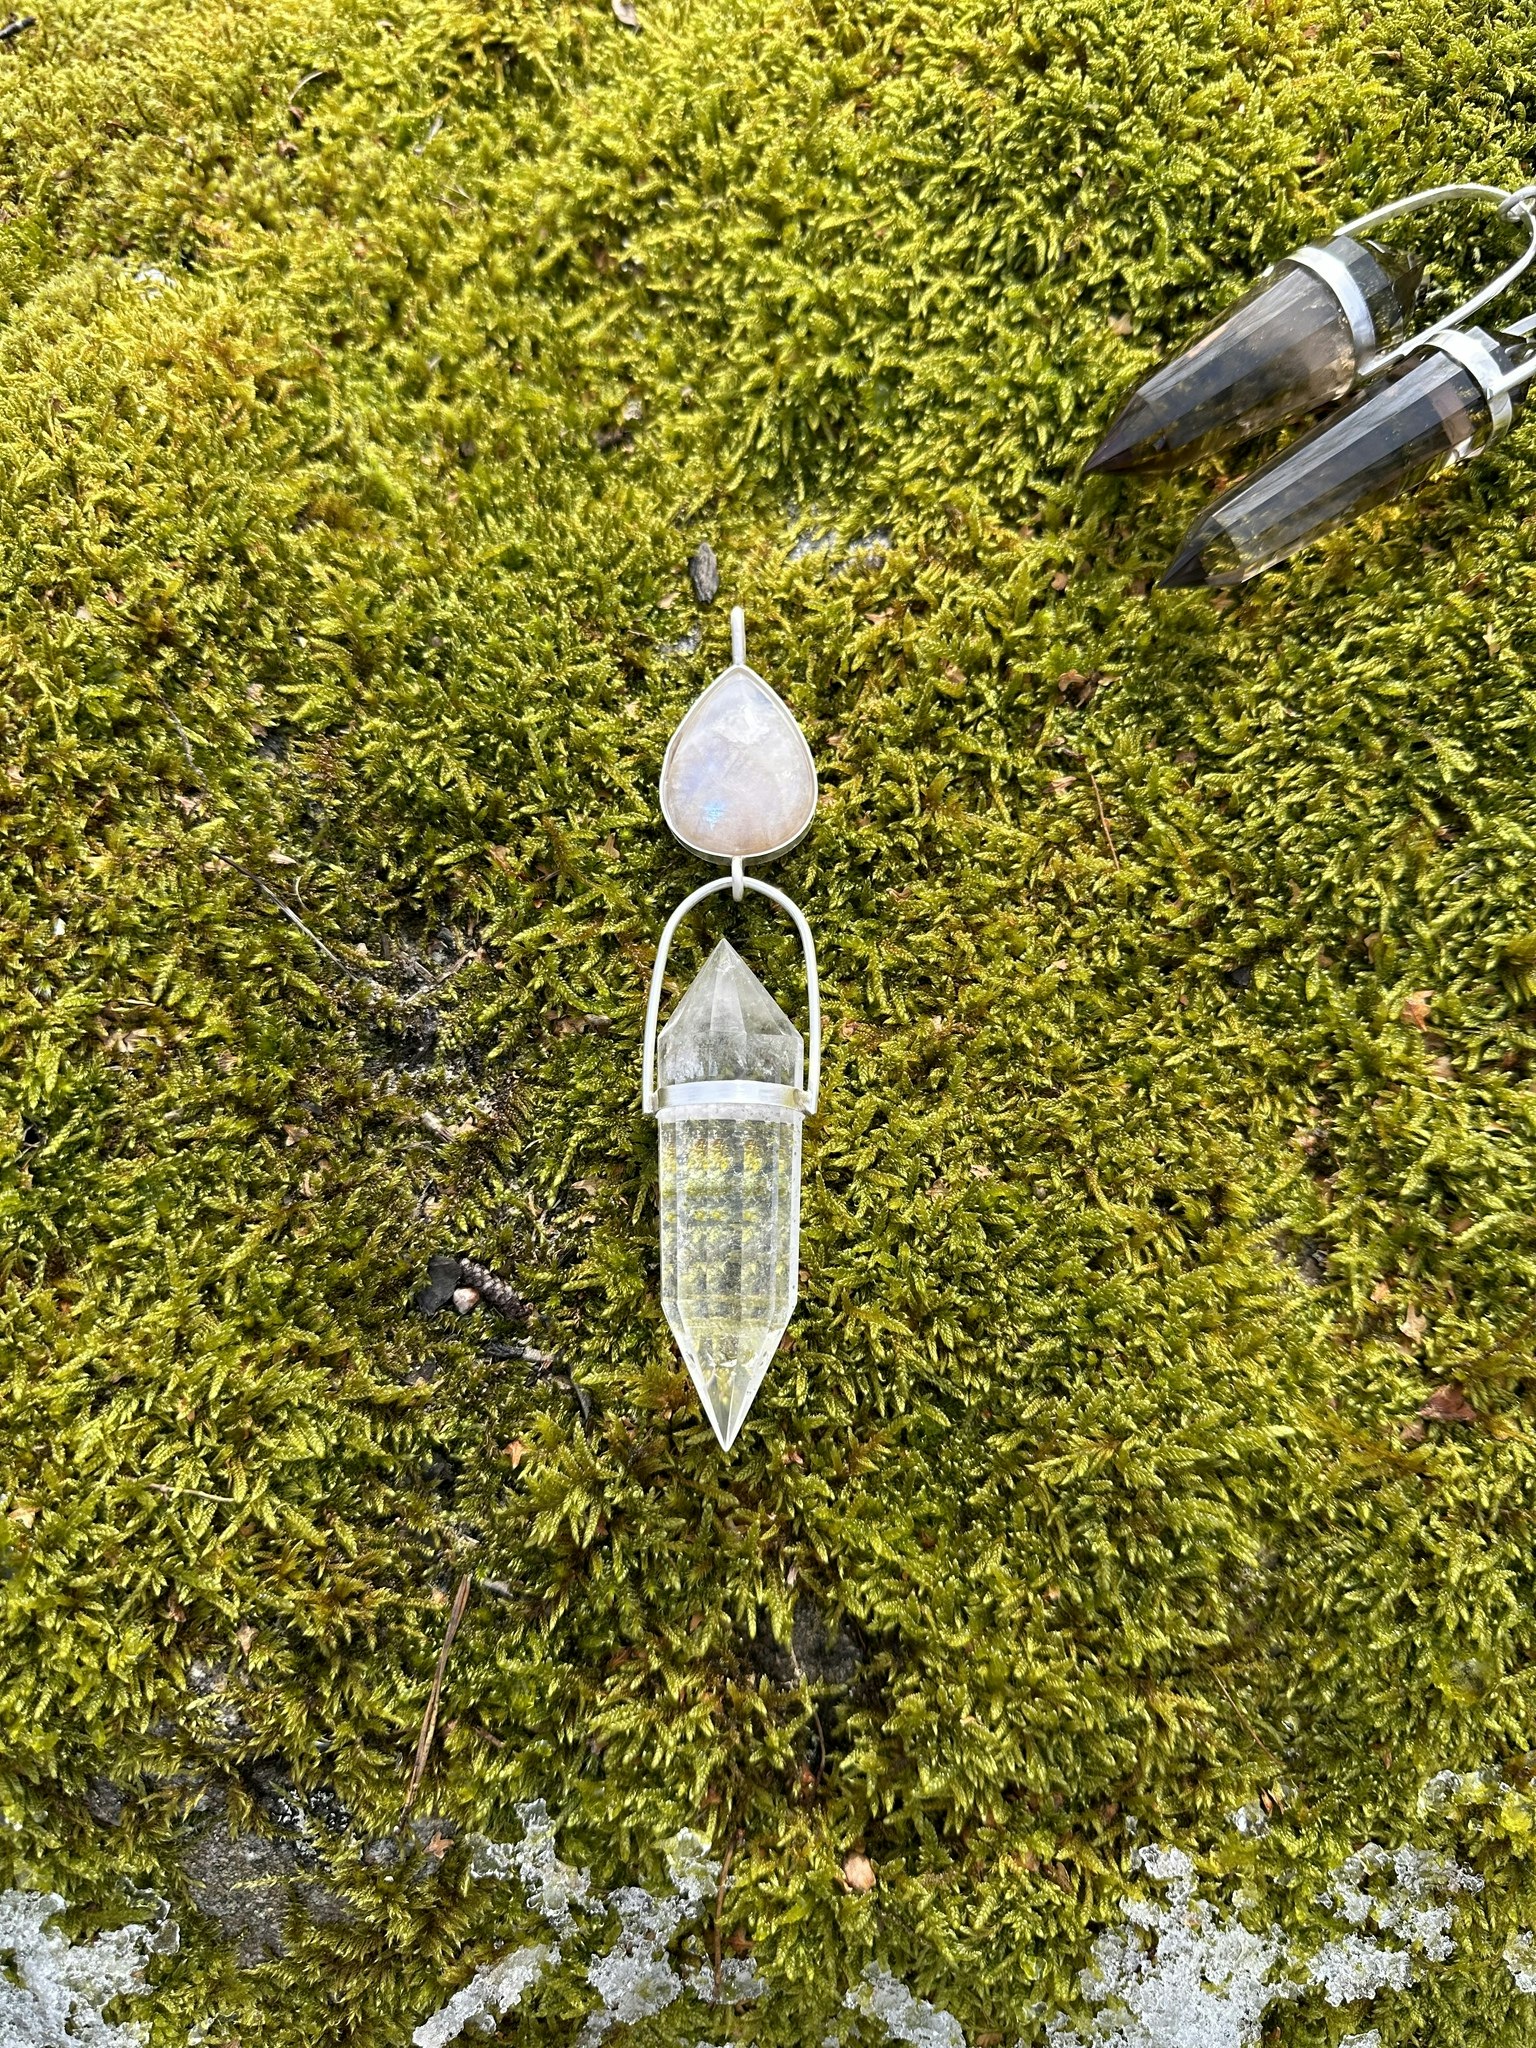 Mästarsmycke Aprikos regnbågsmånaten med Vogelkristall i bergkristall